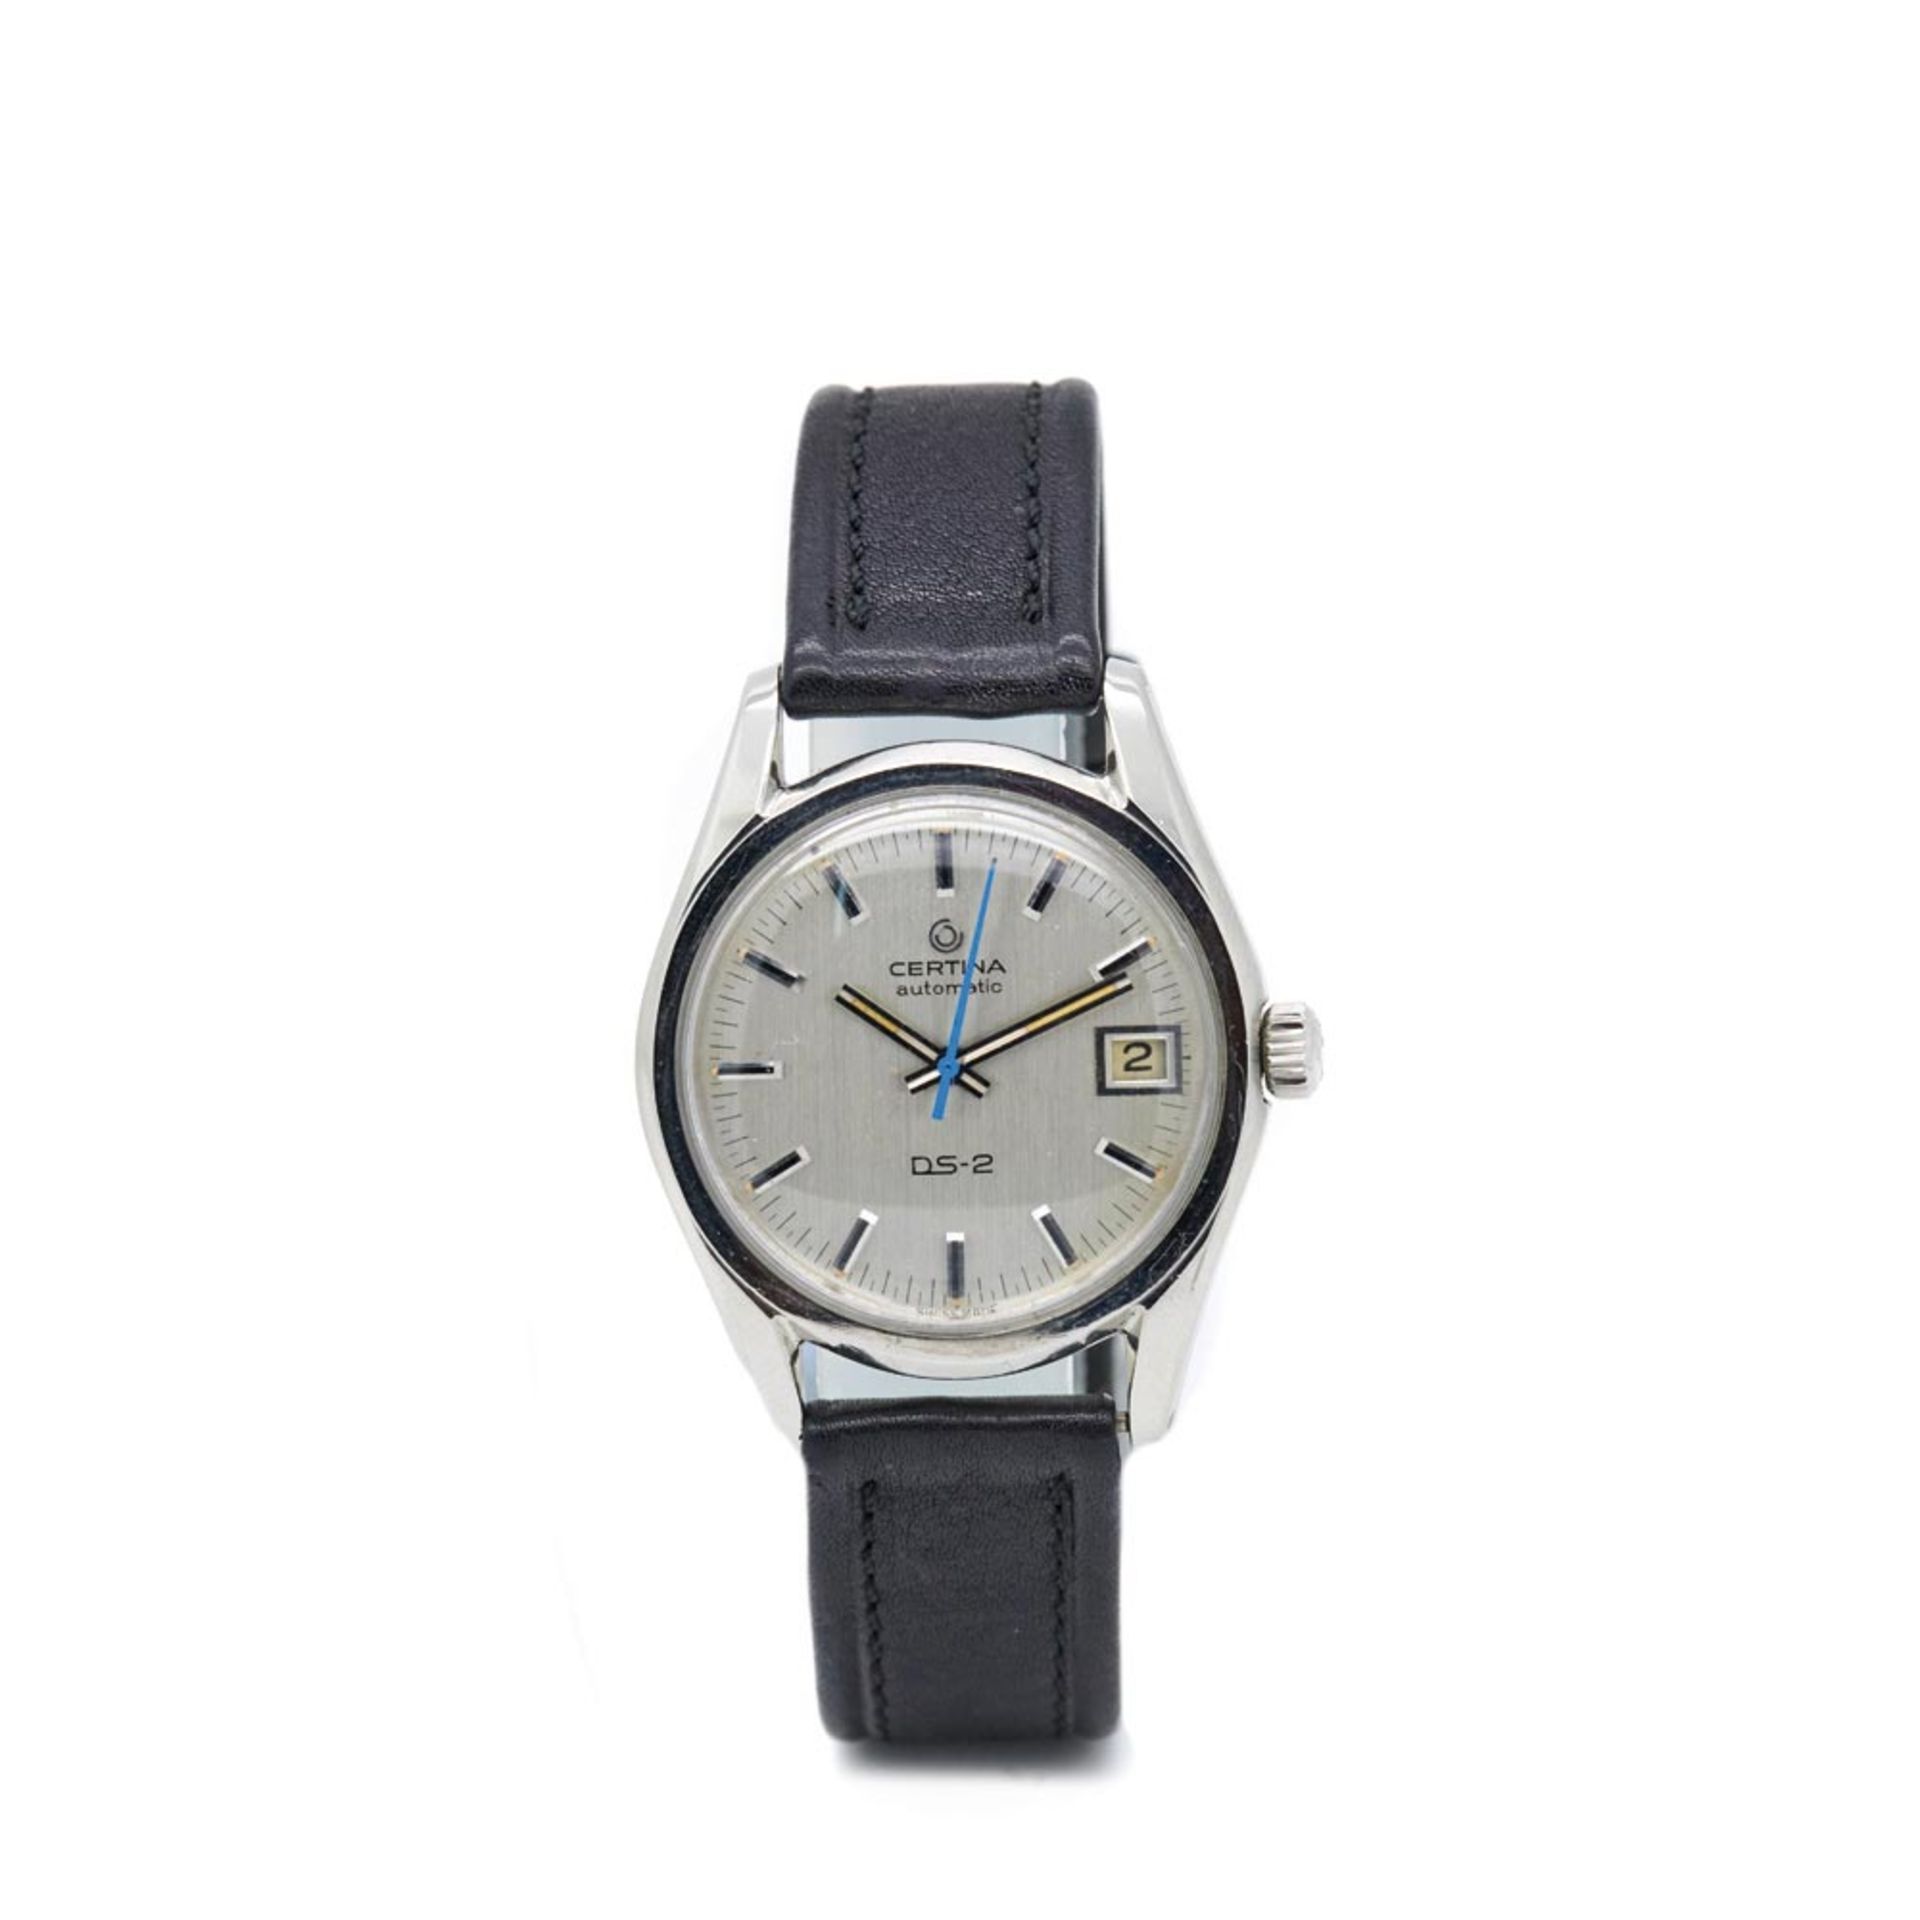 Reloj Certina modelo "Tortuga" de pulsera para caballero, c.1970. En acero y correa de piel.